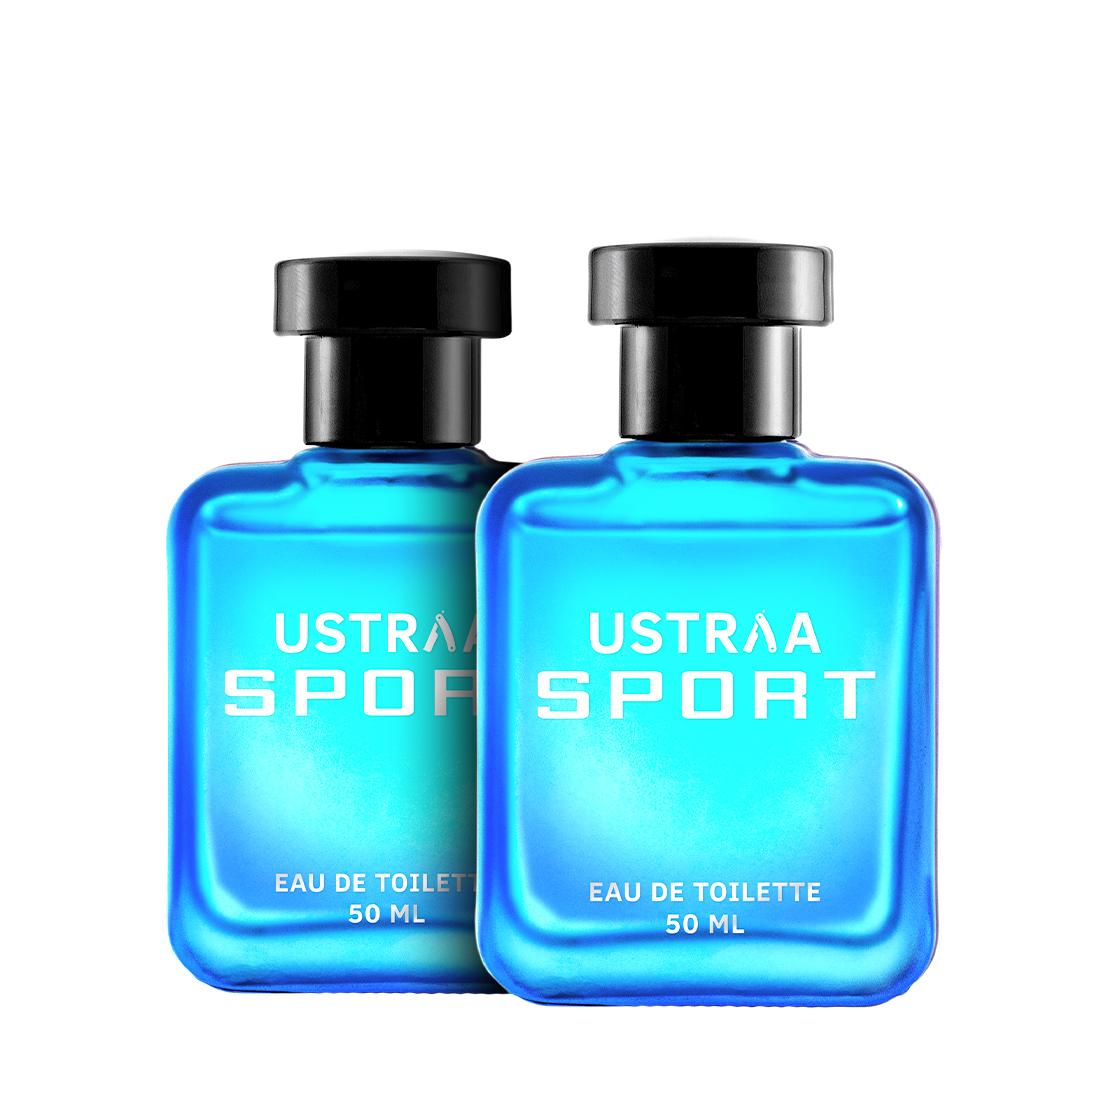 Ustraa Sport EDT Perfume For Men - 50ml - Set of 2